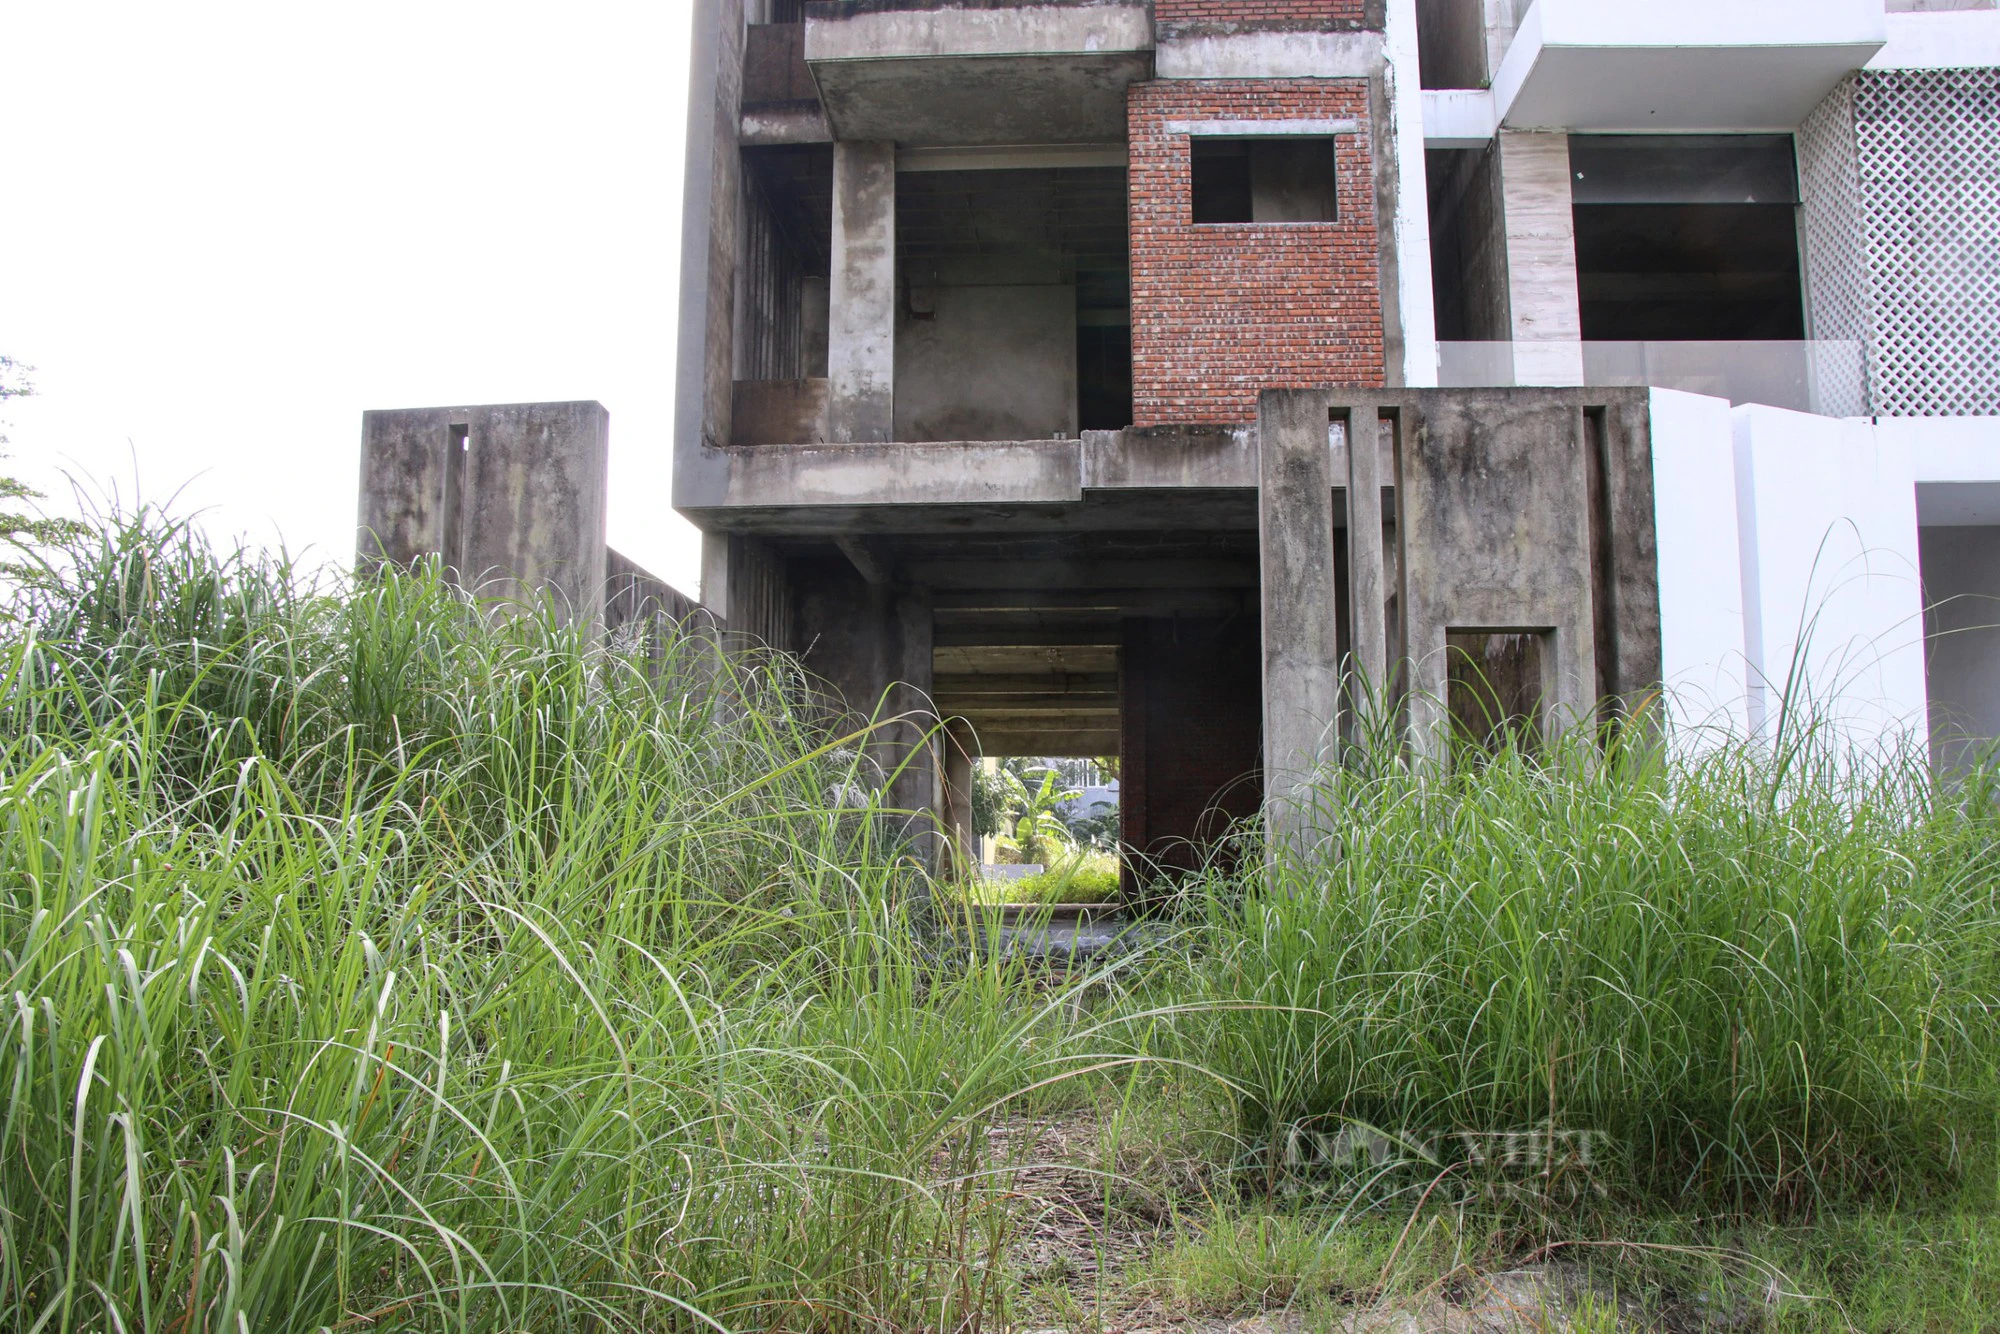  Loạt shophouse tiền tỷ bỏ hoang, rêu mốc, cỏ mọc um tùm tại Đà Nẵng - Ảnh 4.